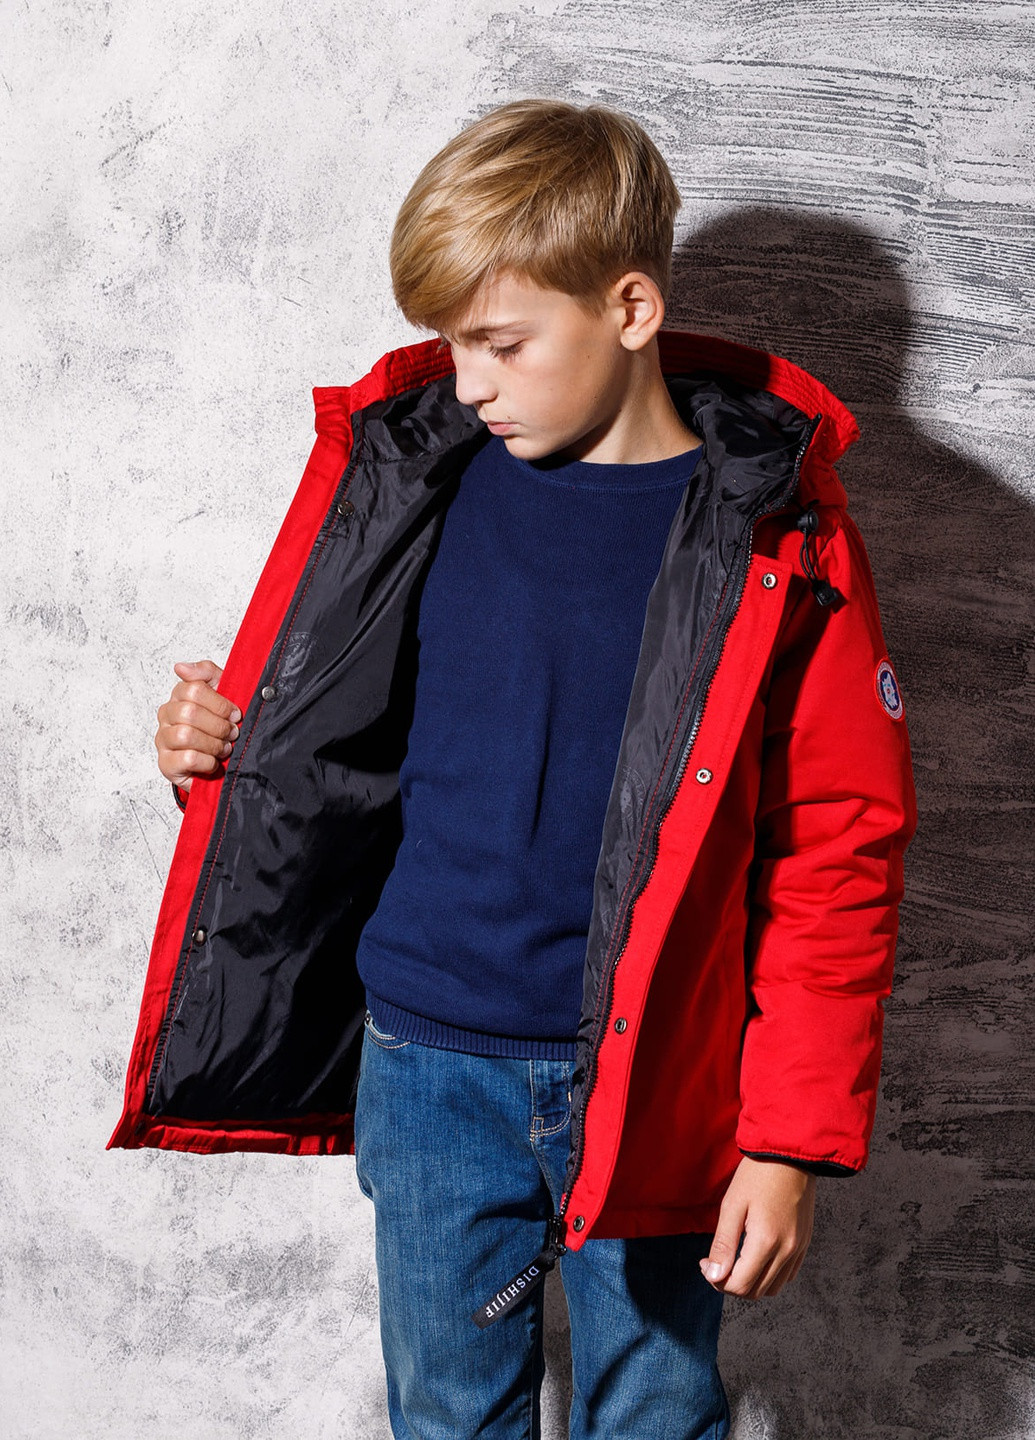 Красная демисезонная пуховая демисезонная куртка для мальчика 7347 160 см красный 52857 DobraMAMA